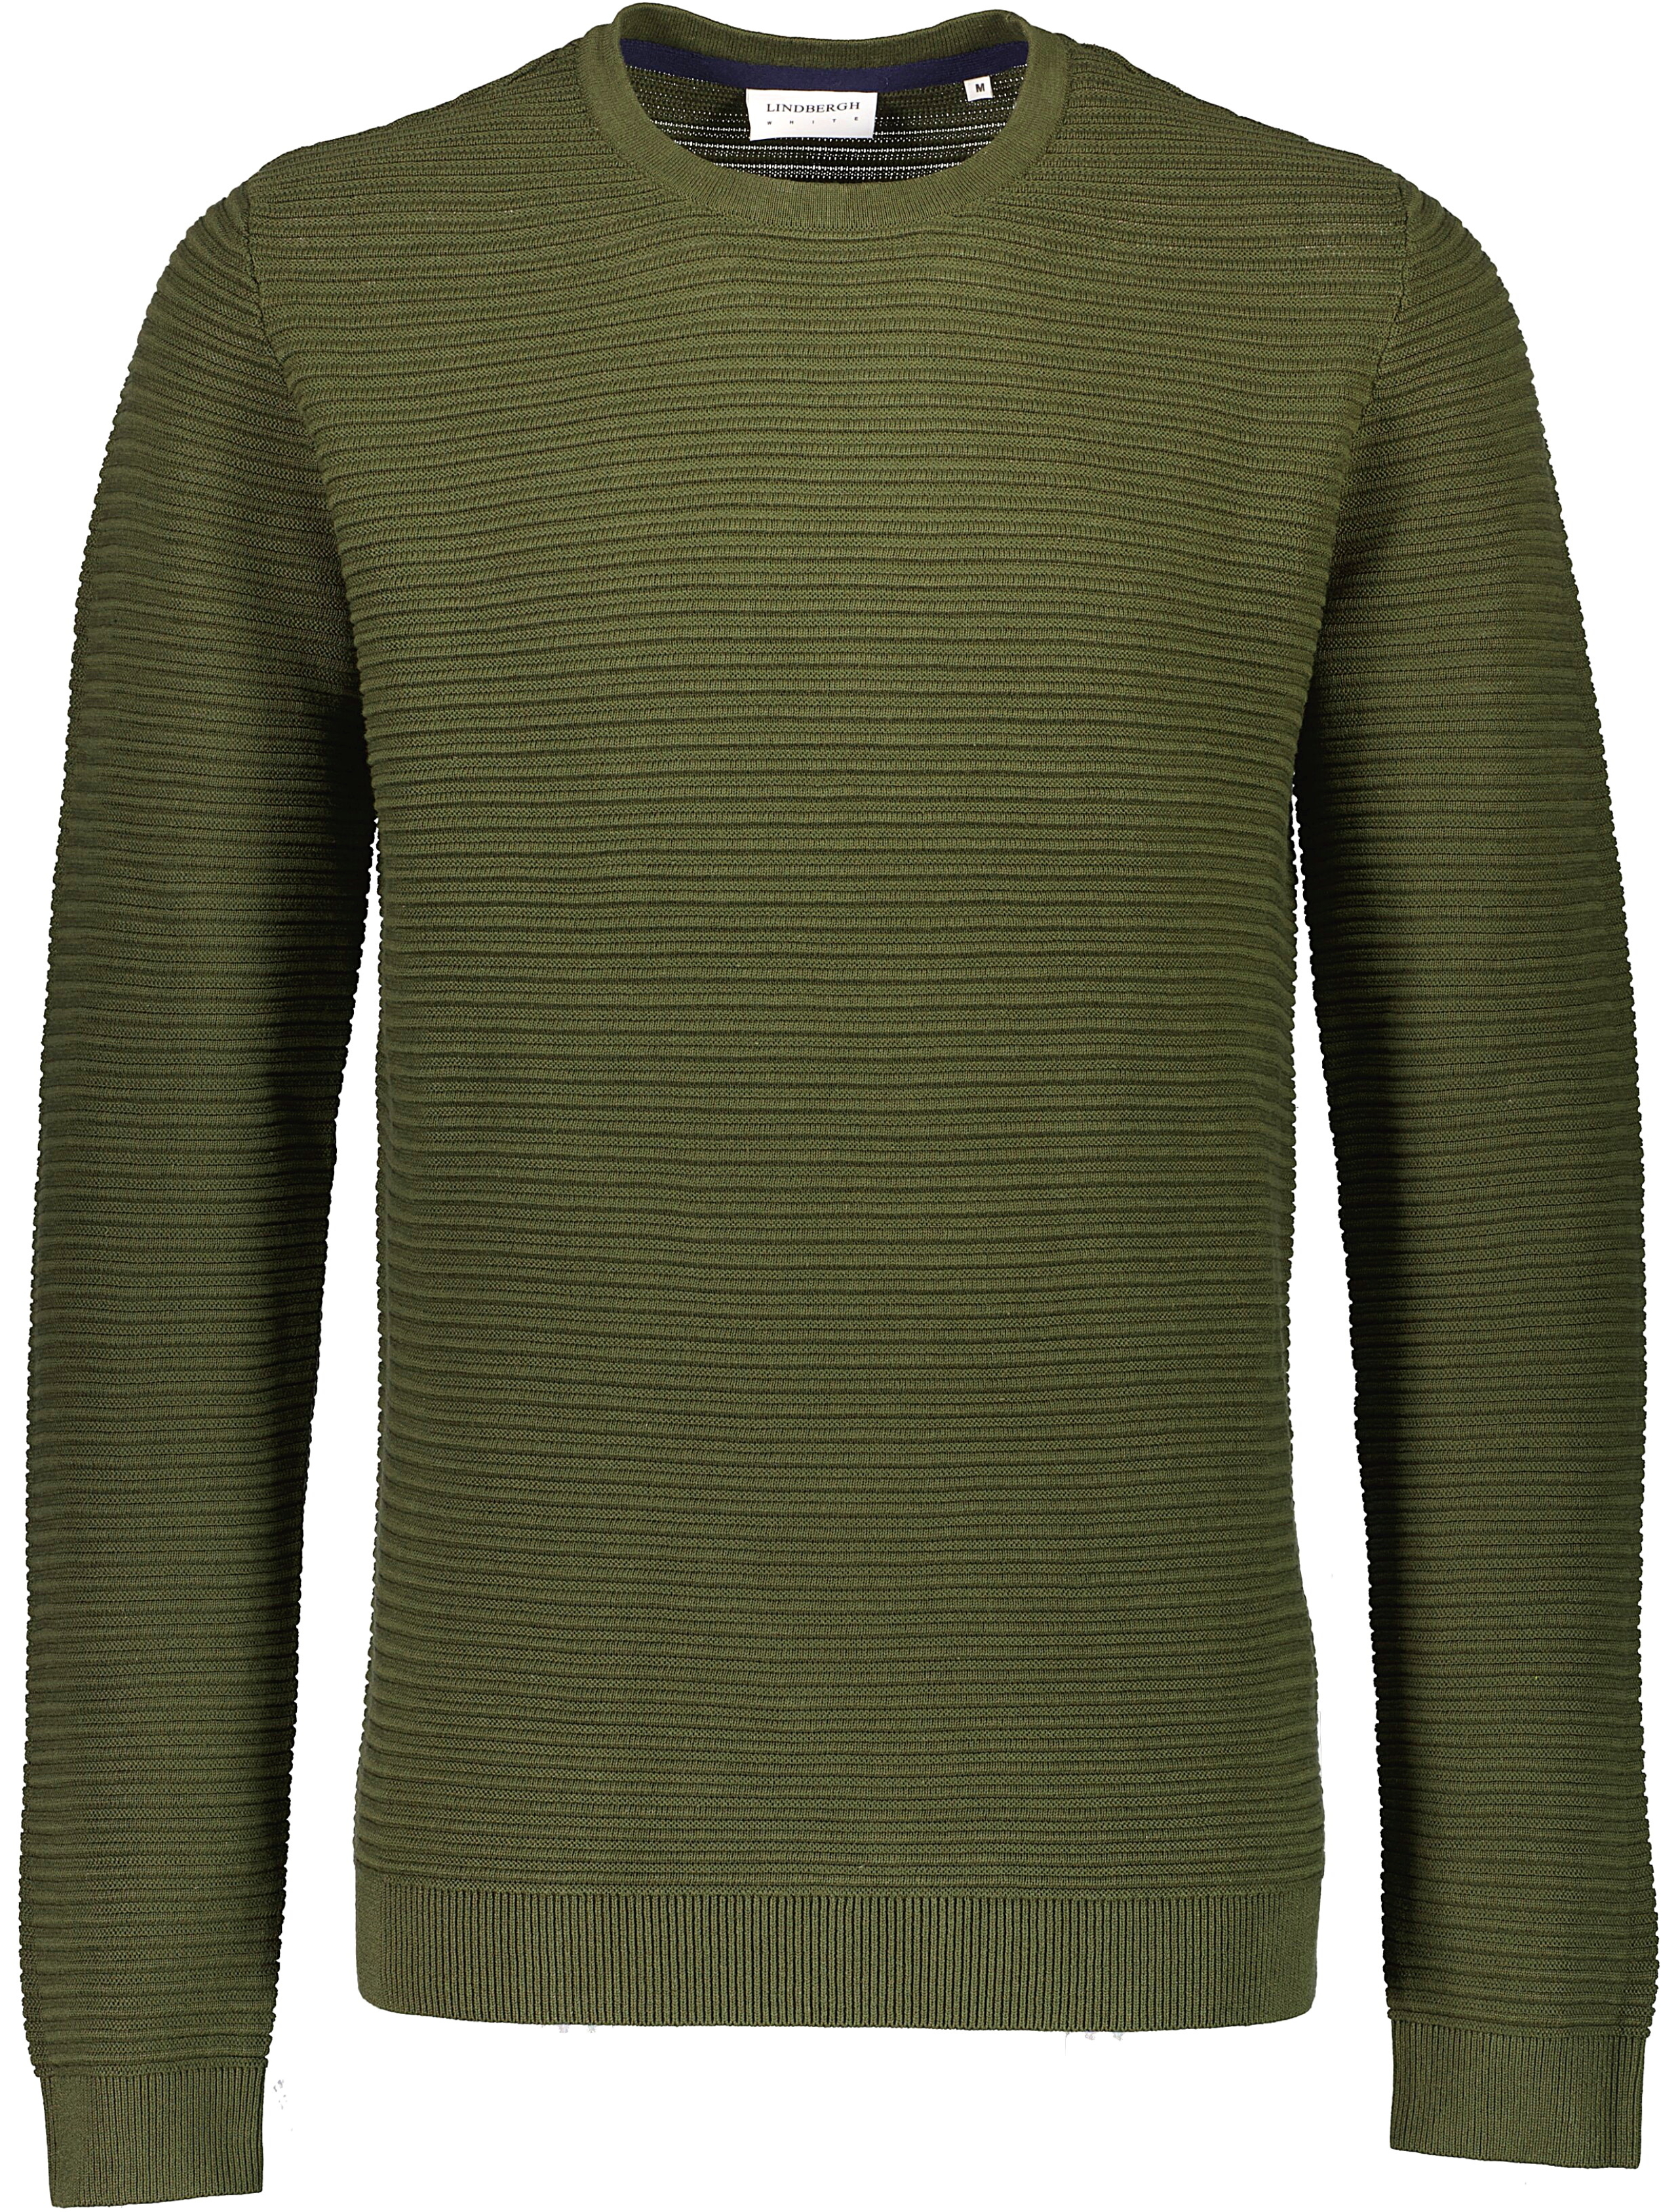 Lindbergh Knitwear green / dk army